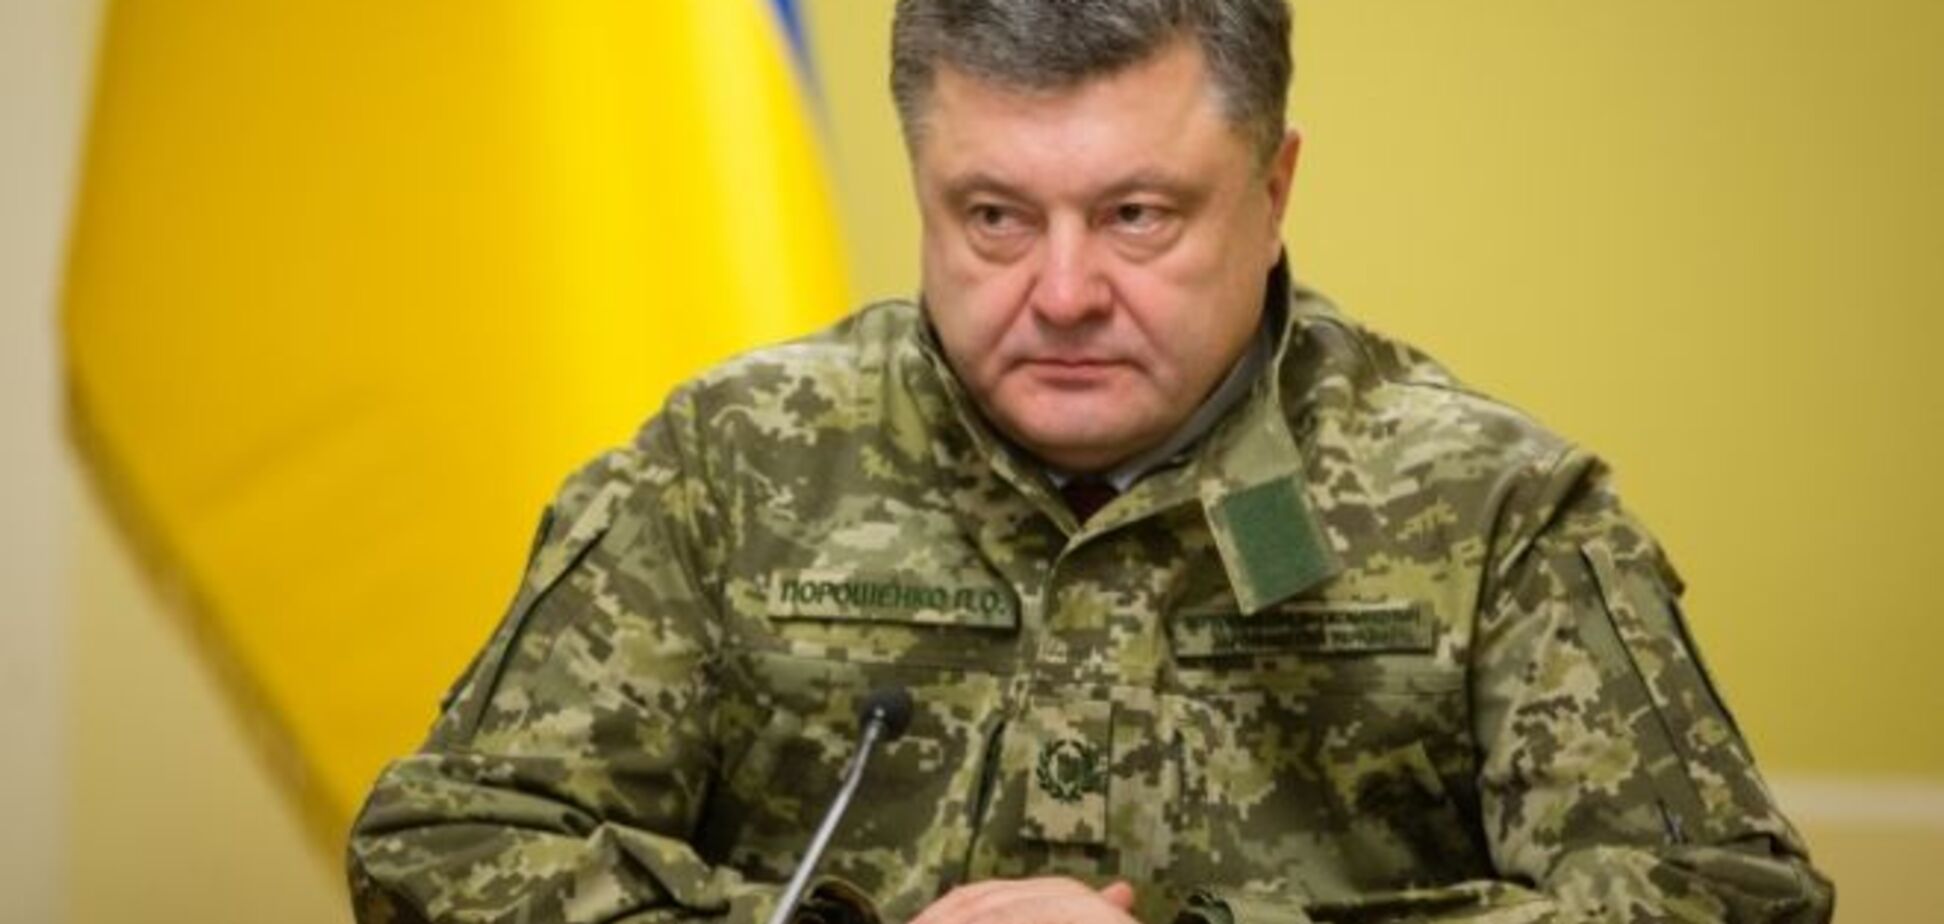 Порошенко примерил новую форму украинских солдат. Фото- и видеофакт